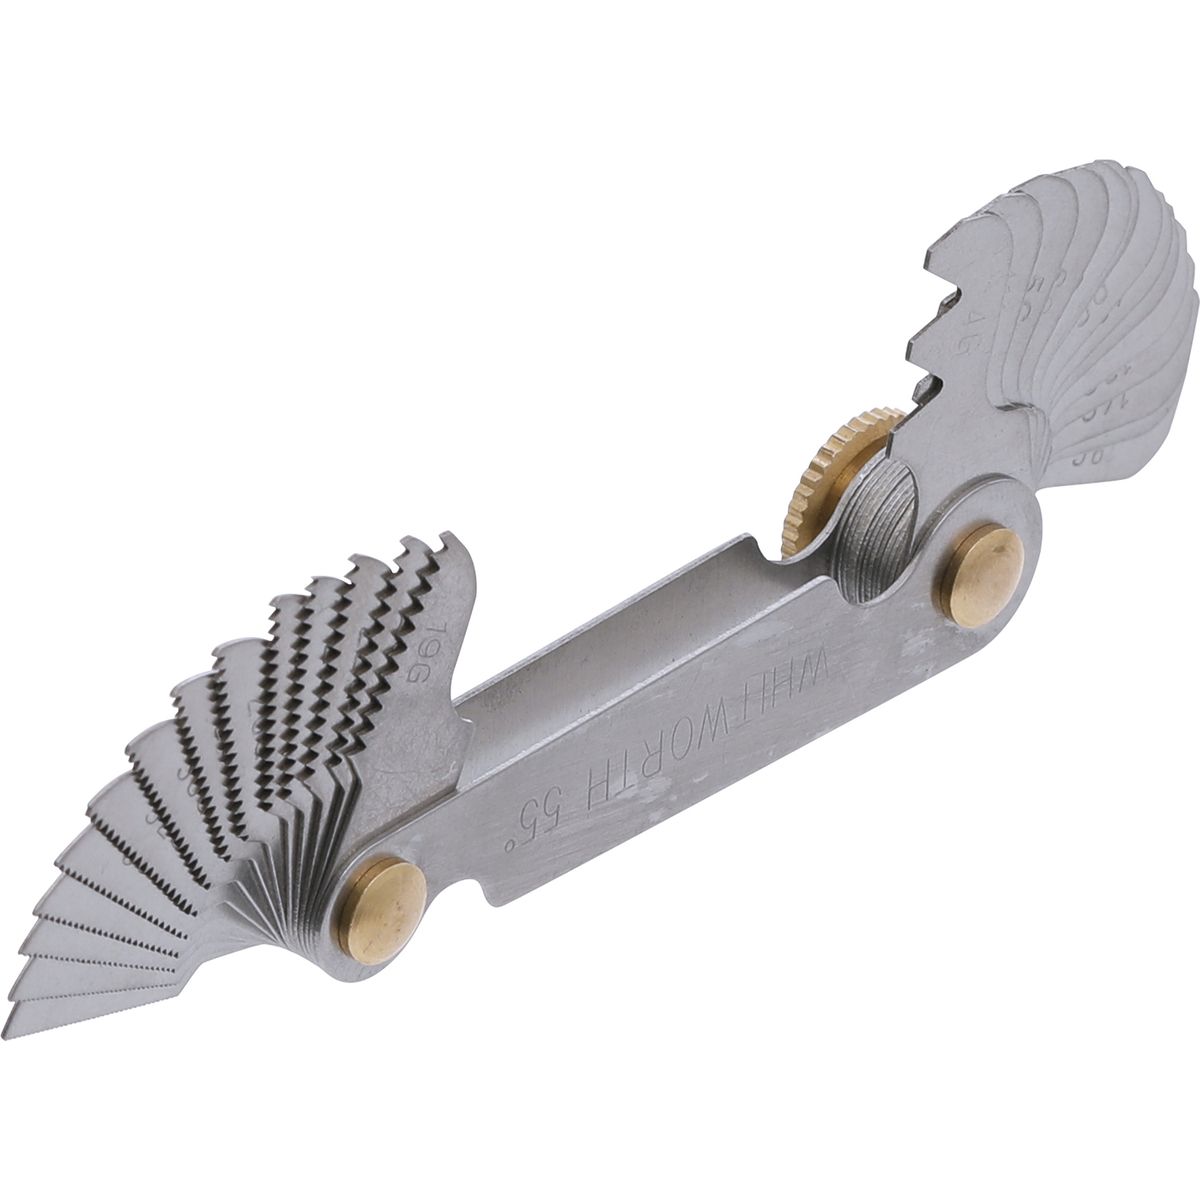 Screwpitch Gauge | 28 Blades | whitworth 4G - 62G